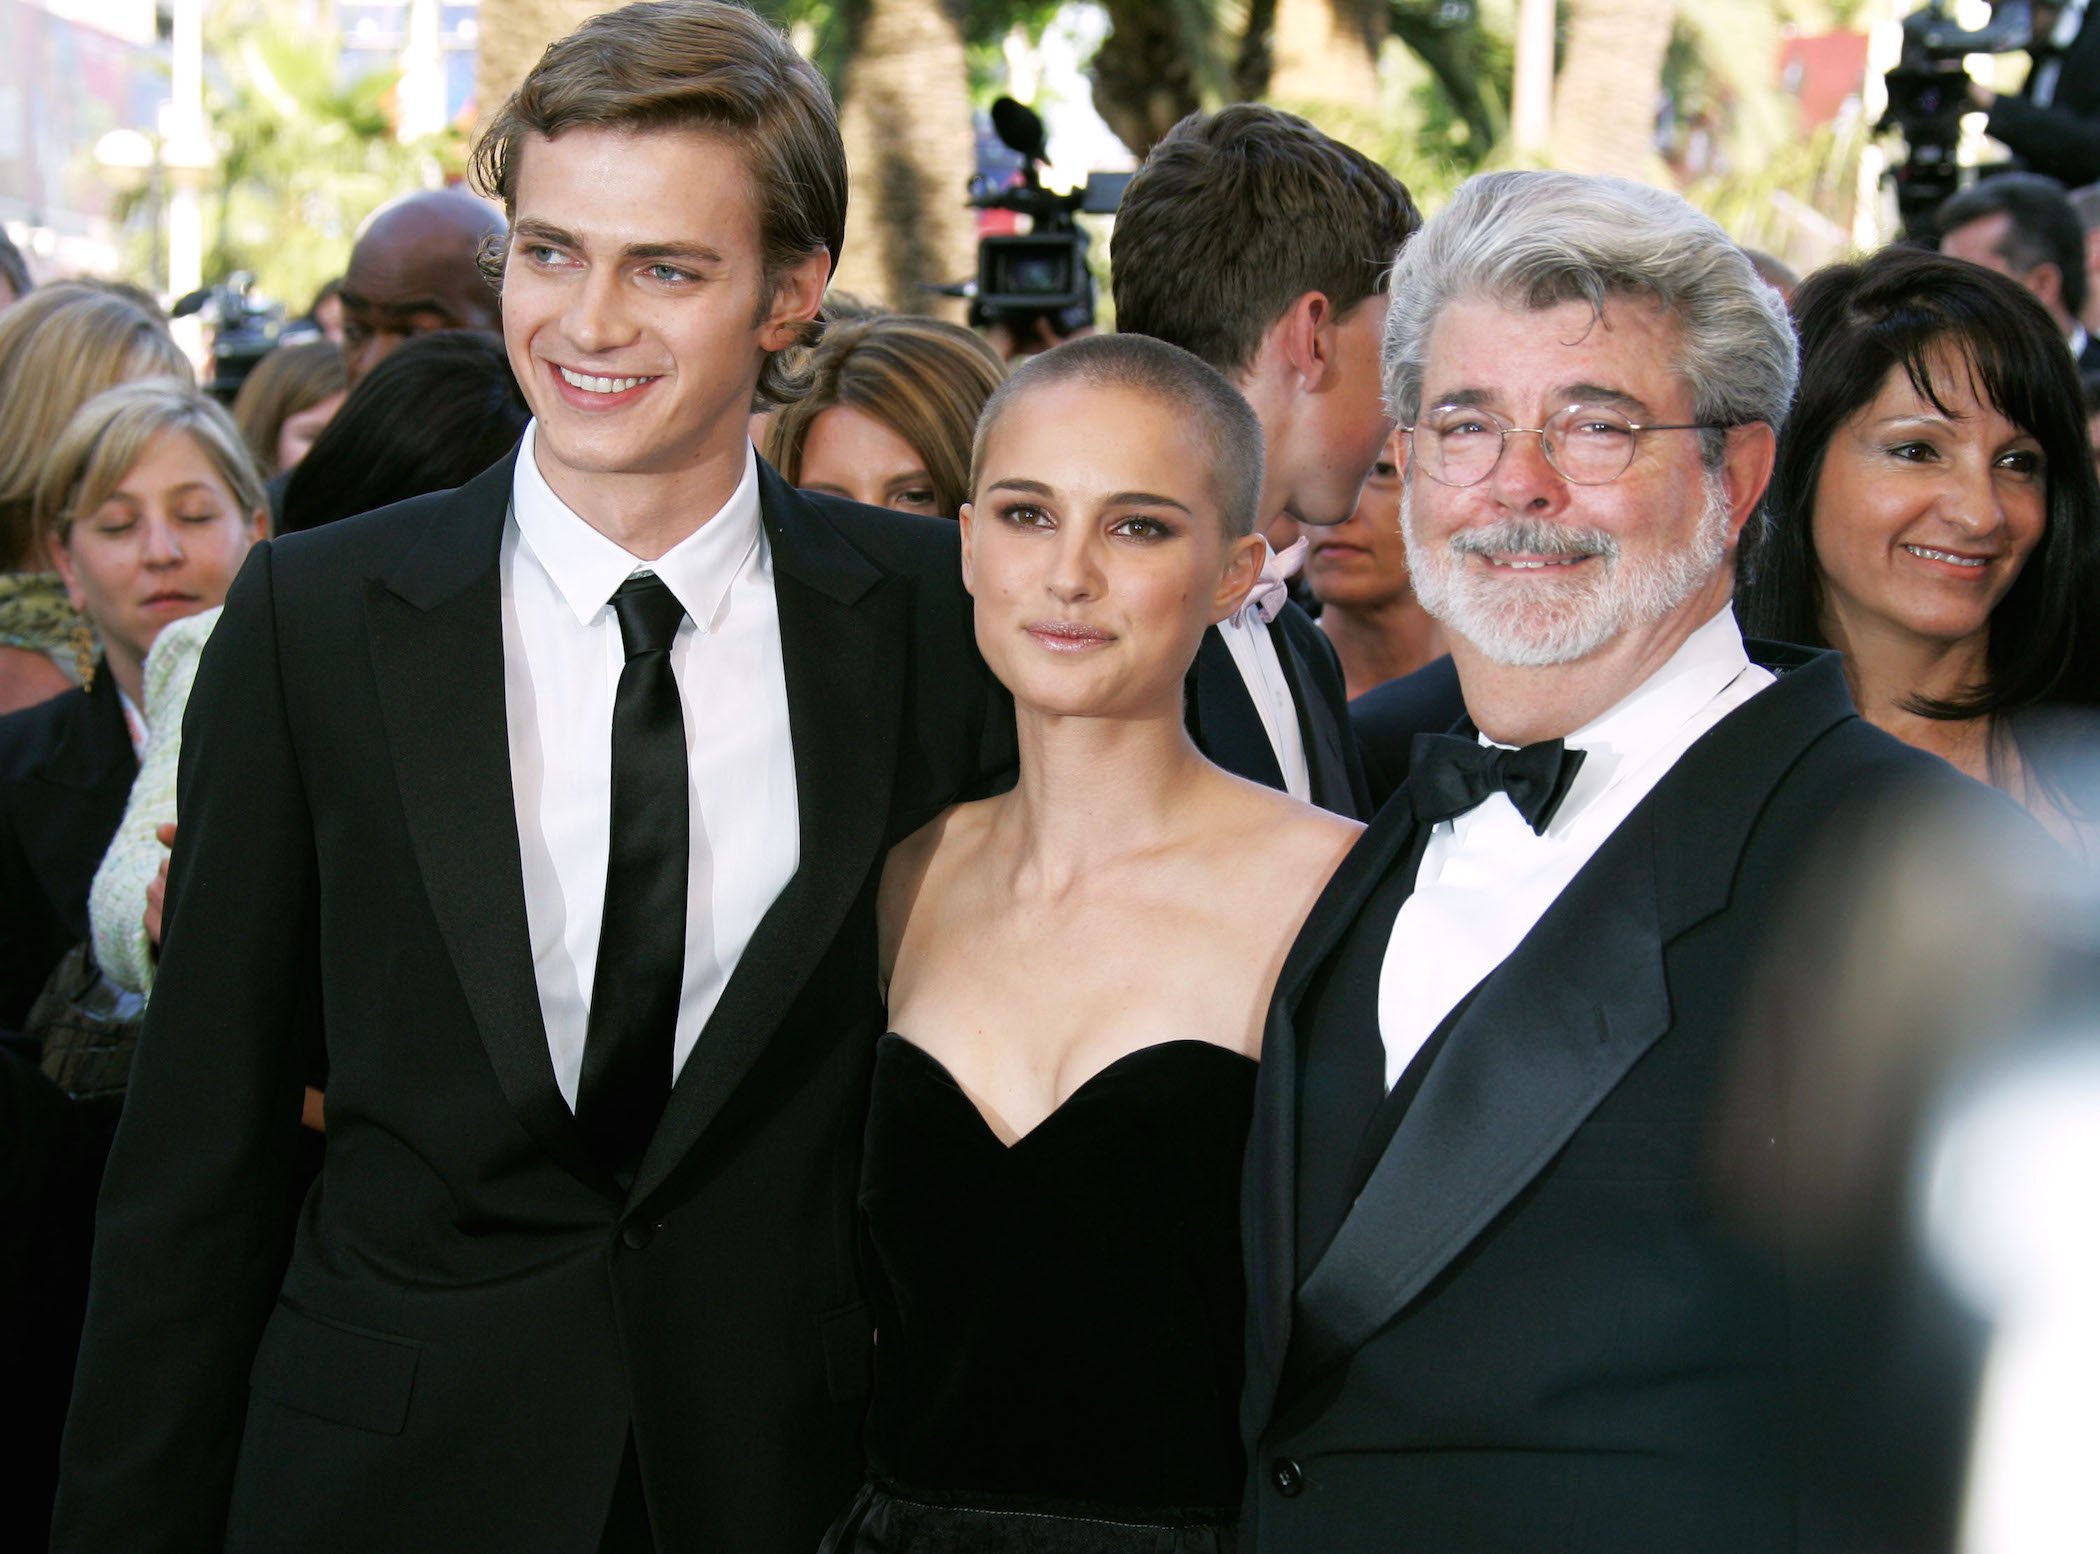 Hayden Christensen, Natalie Portman, and George Lucas from 'Star Wars'